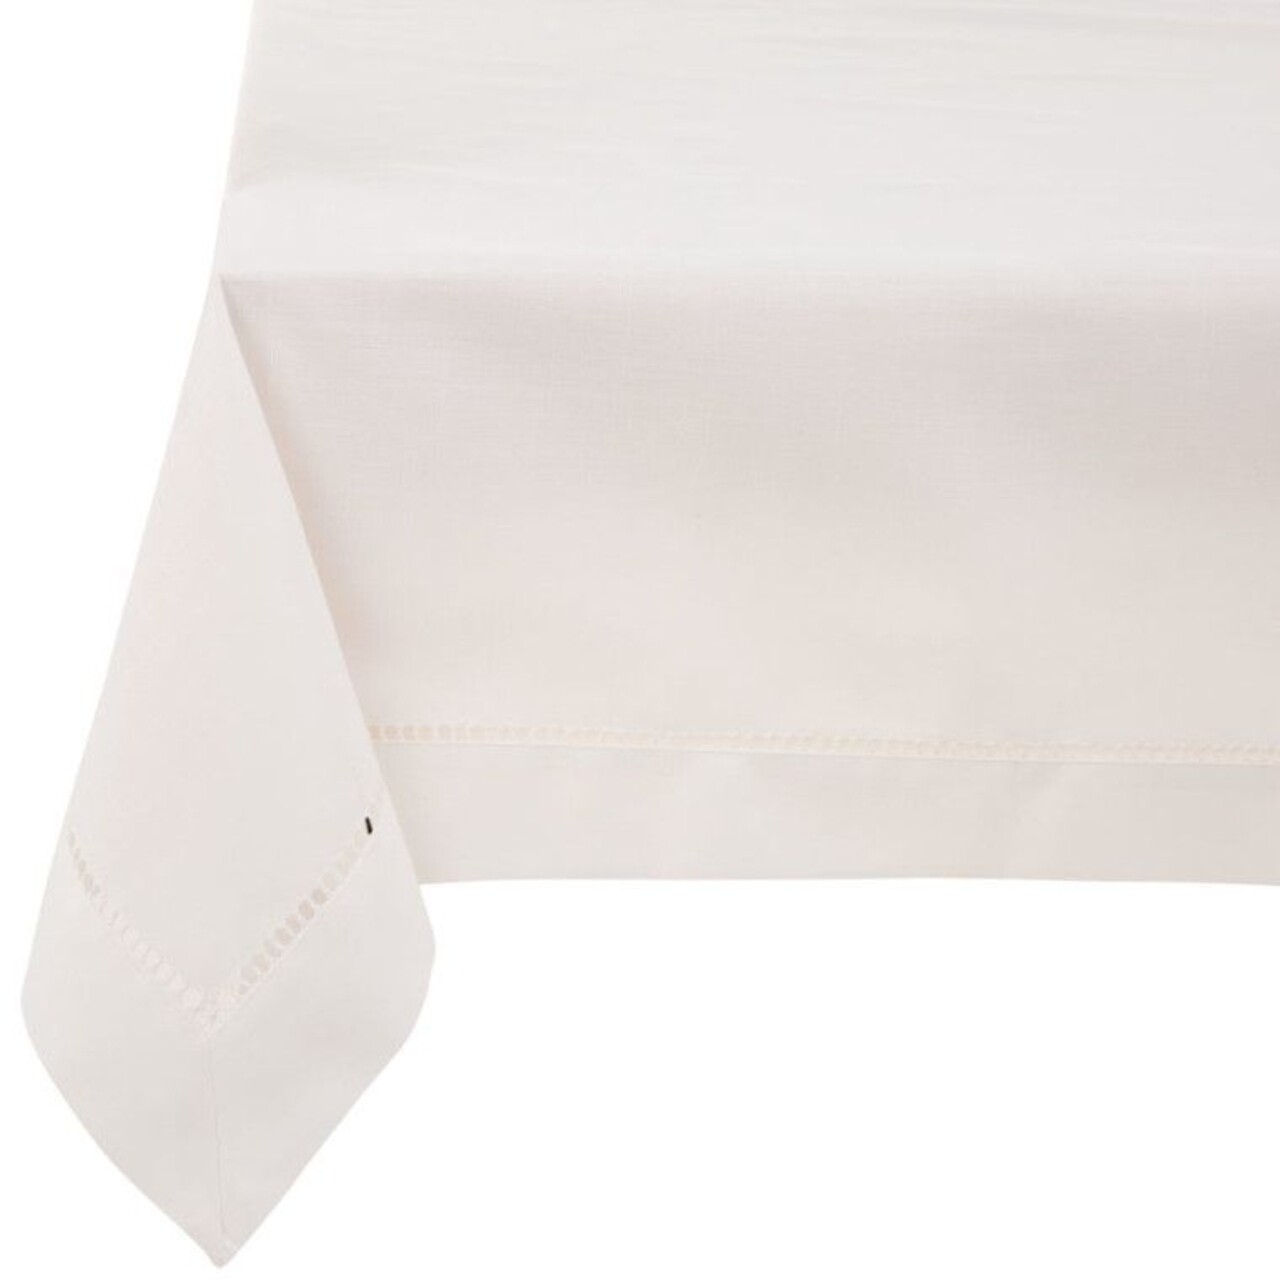 Asztalterítő Classical White, Ambition, 160x280 cm, poliészter, fehér